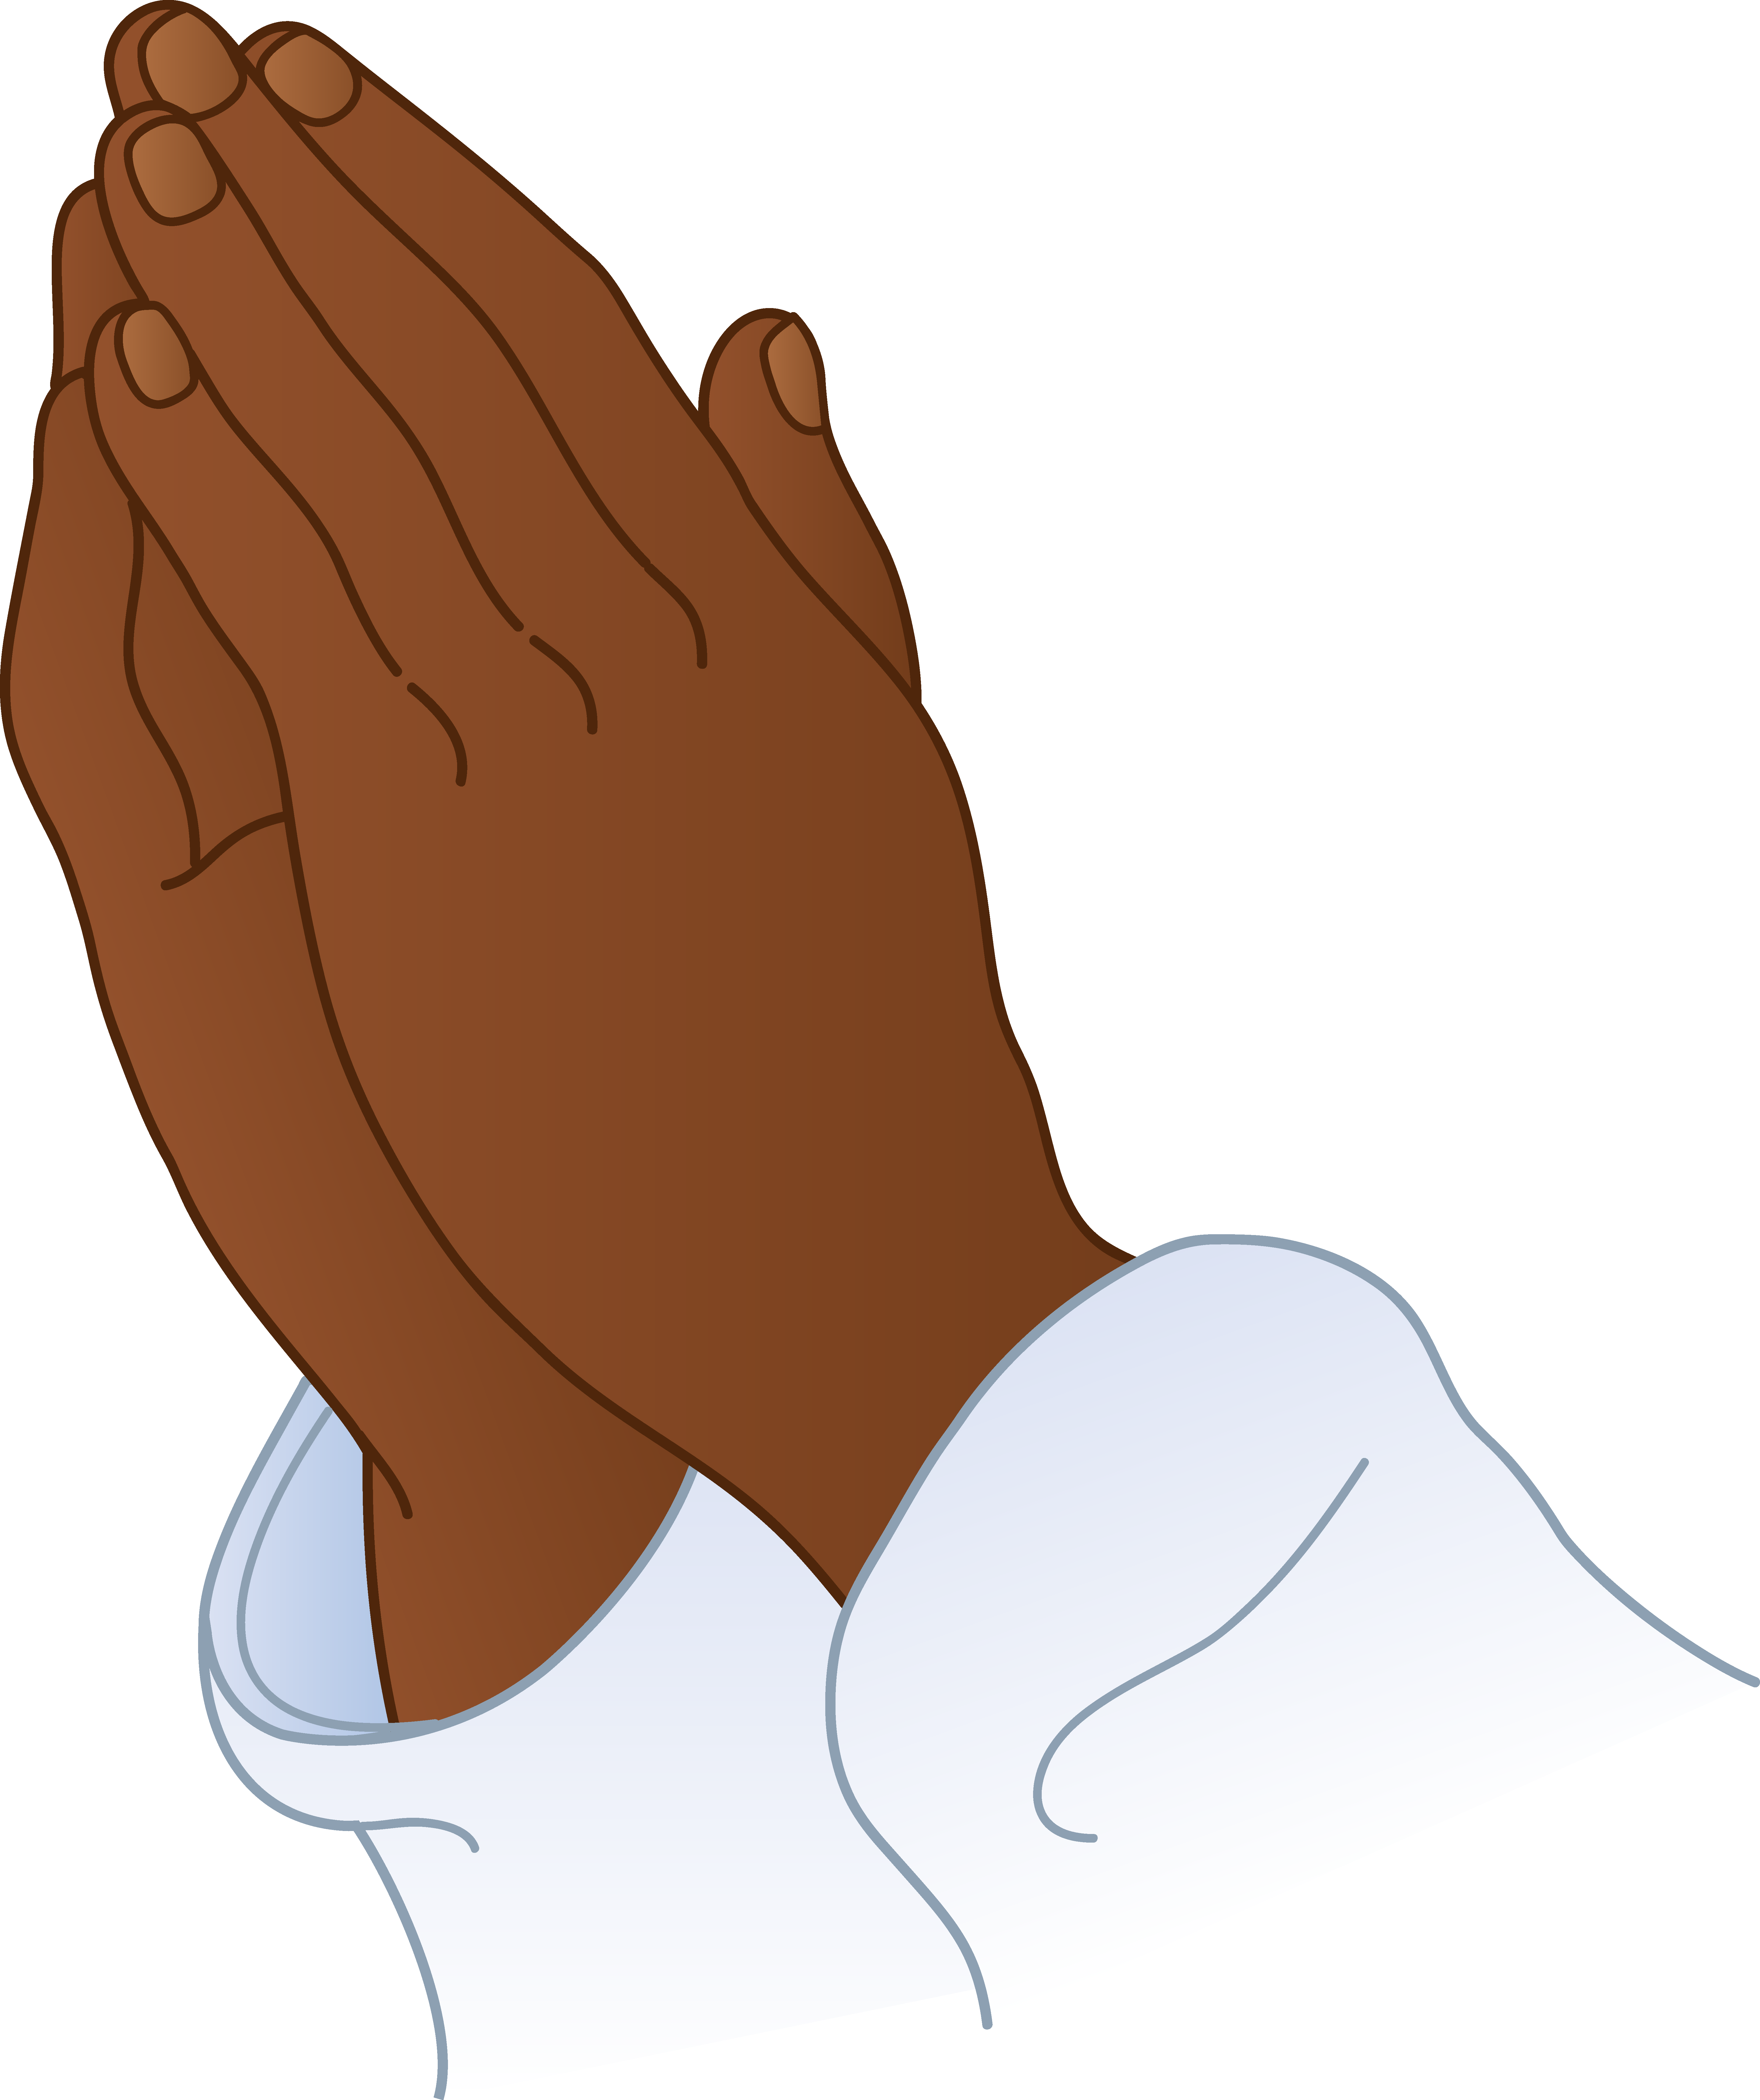 Free Praying Hands Images Free, Download Free Praying Hands Images Free